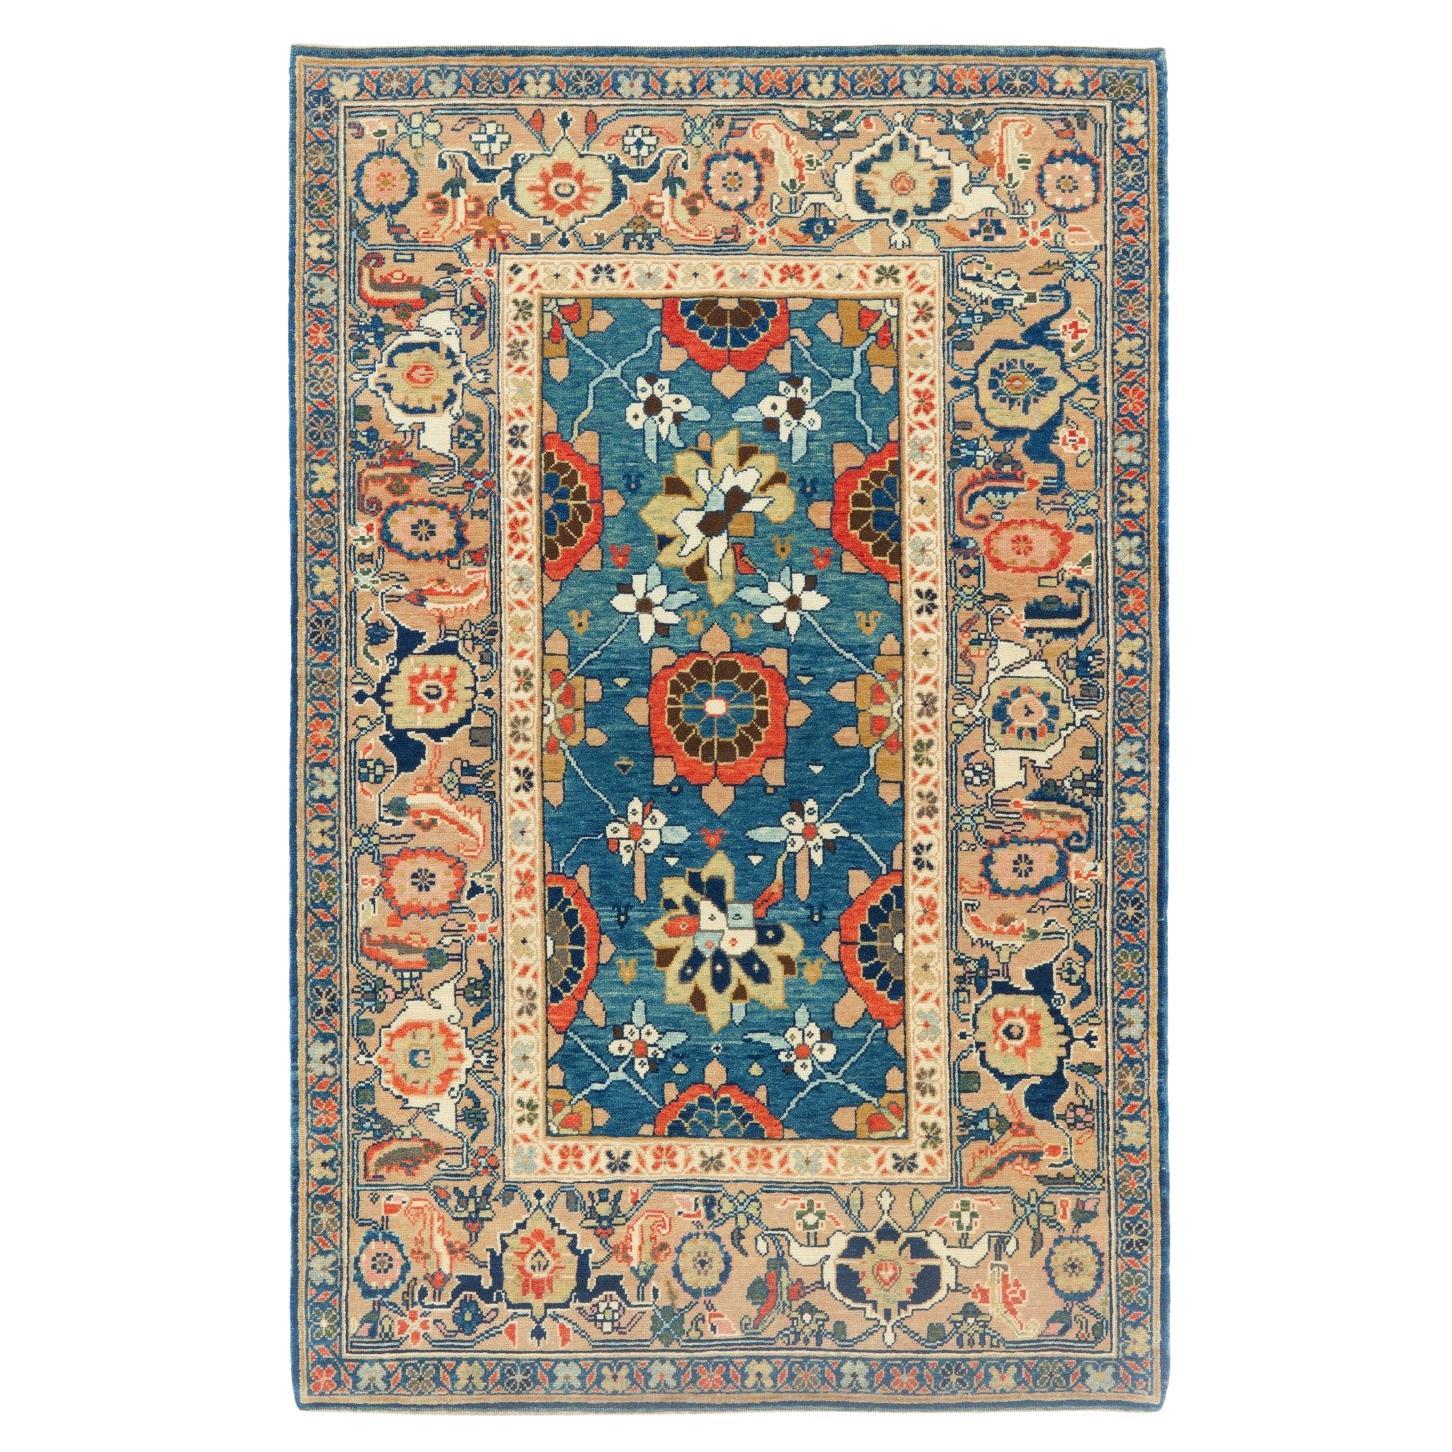 Ararat Rugs Mina Khani Rug with Bidjar Border Persian Revival Carpet Natural Dye For Sale